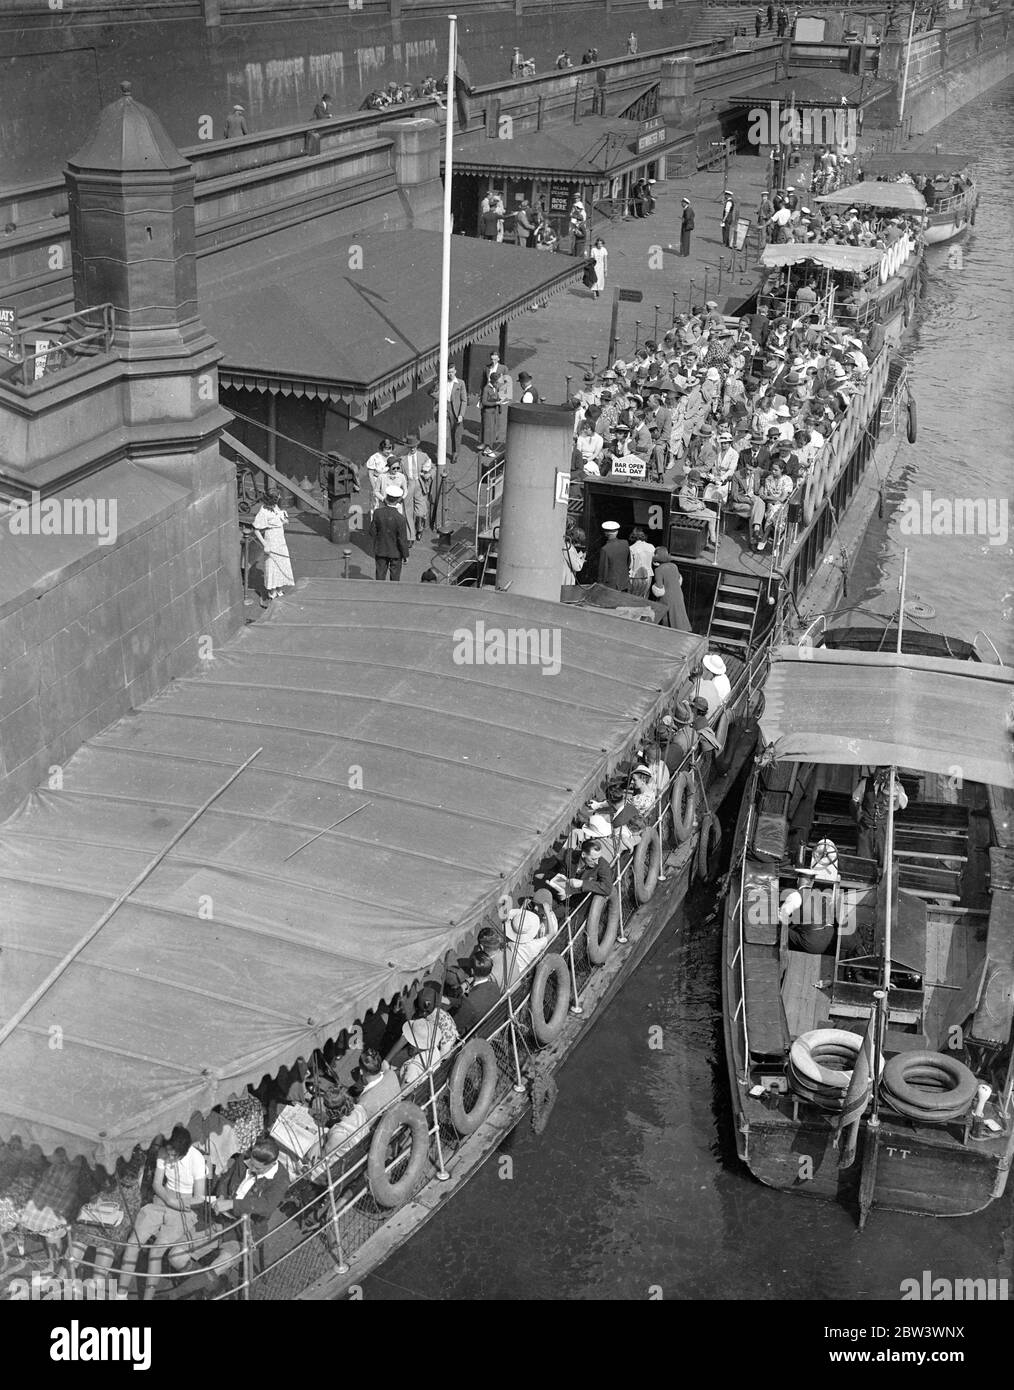 Sonnenschein ruft Tausende von Londonern an den Fluss. Stehplätze waren nur die Regel auf den Themse Ausflugsbooten wurde Westminster Pier für Fahrten den Fluss nach Hampton Court und anderen Orten verlassen. Tausende von Londonern suchten, um die Sonne auf dem Wasserweg Foto zeigt überfüllten Vergnügungsboote verlassen Westminster genießen. Bis 16. August 1936 Stockfoto